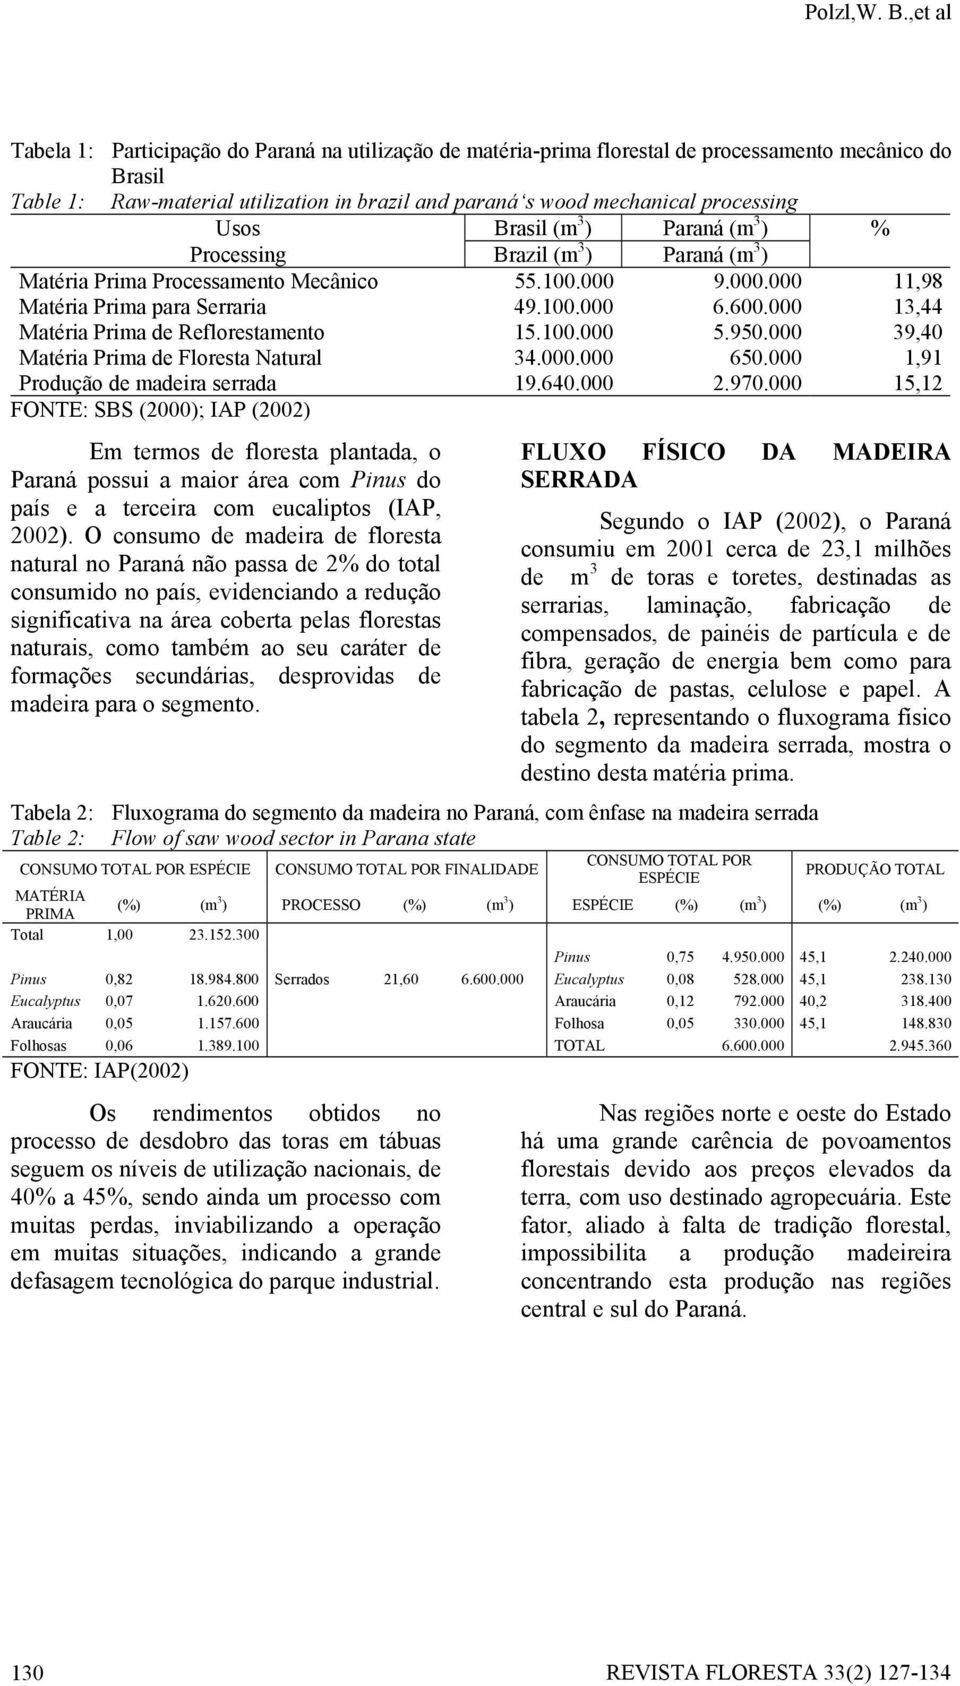 processing Usos Brasil (m 3 ) Paraná (m 3 ) % Processing Brazil (m 3 ) Paraná (m 3 ) Matéria Prima Processamento Mecânico 55.100.000 9.000.000 11,98 Matéria Prima para Serraria 49.100.000 6.600.